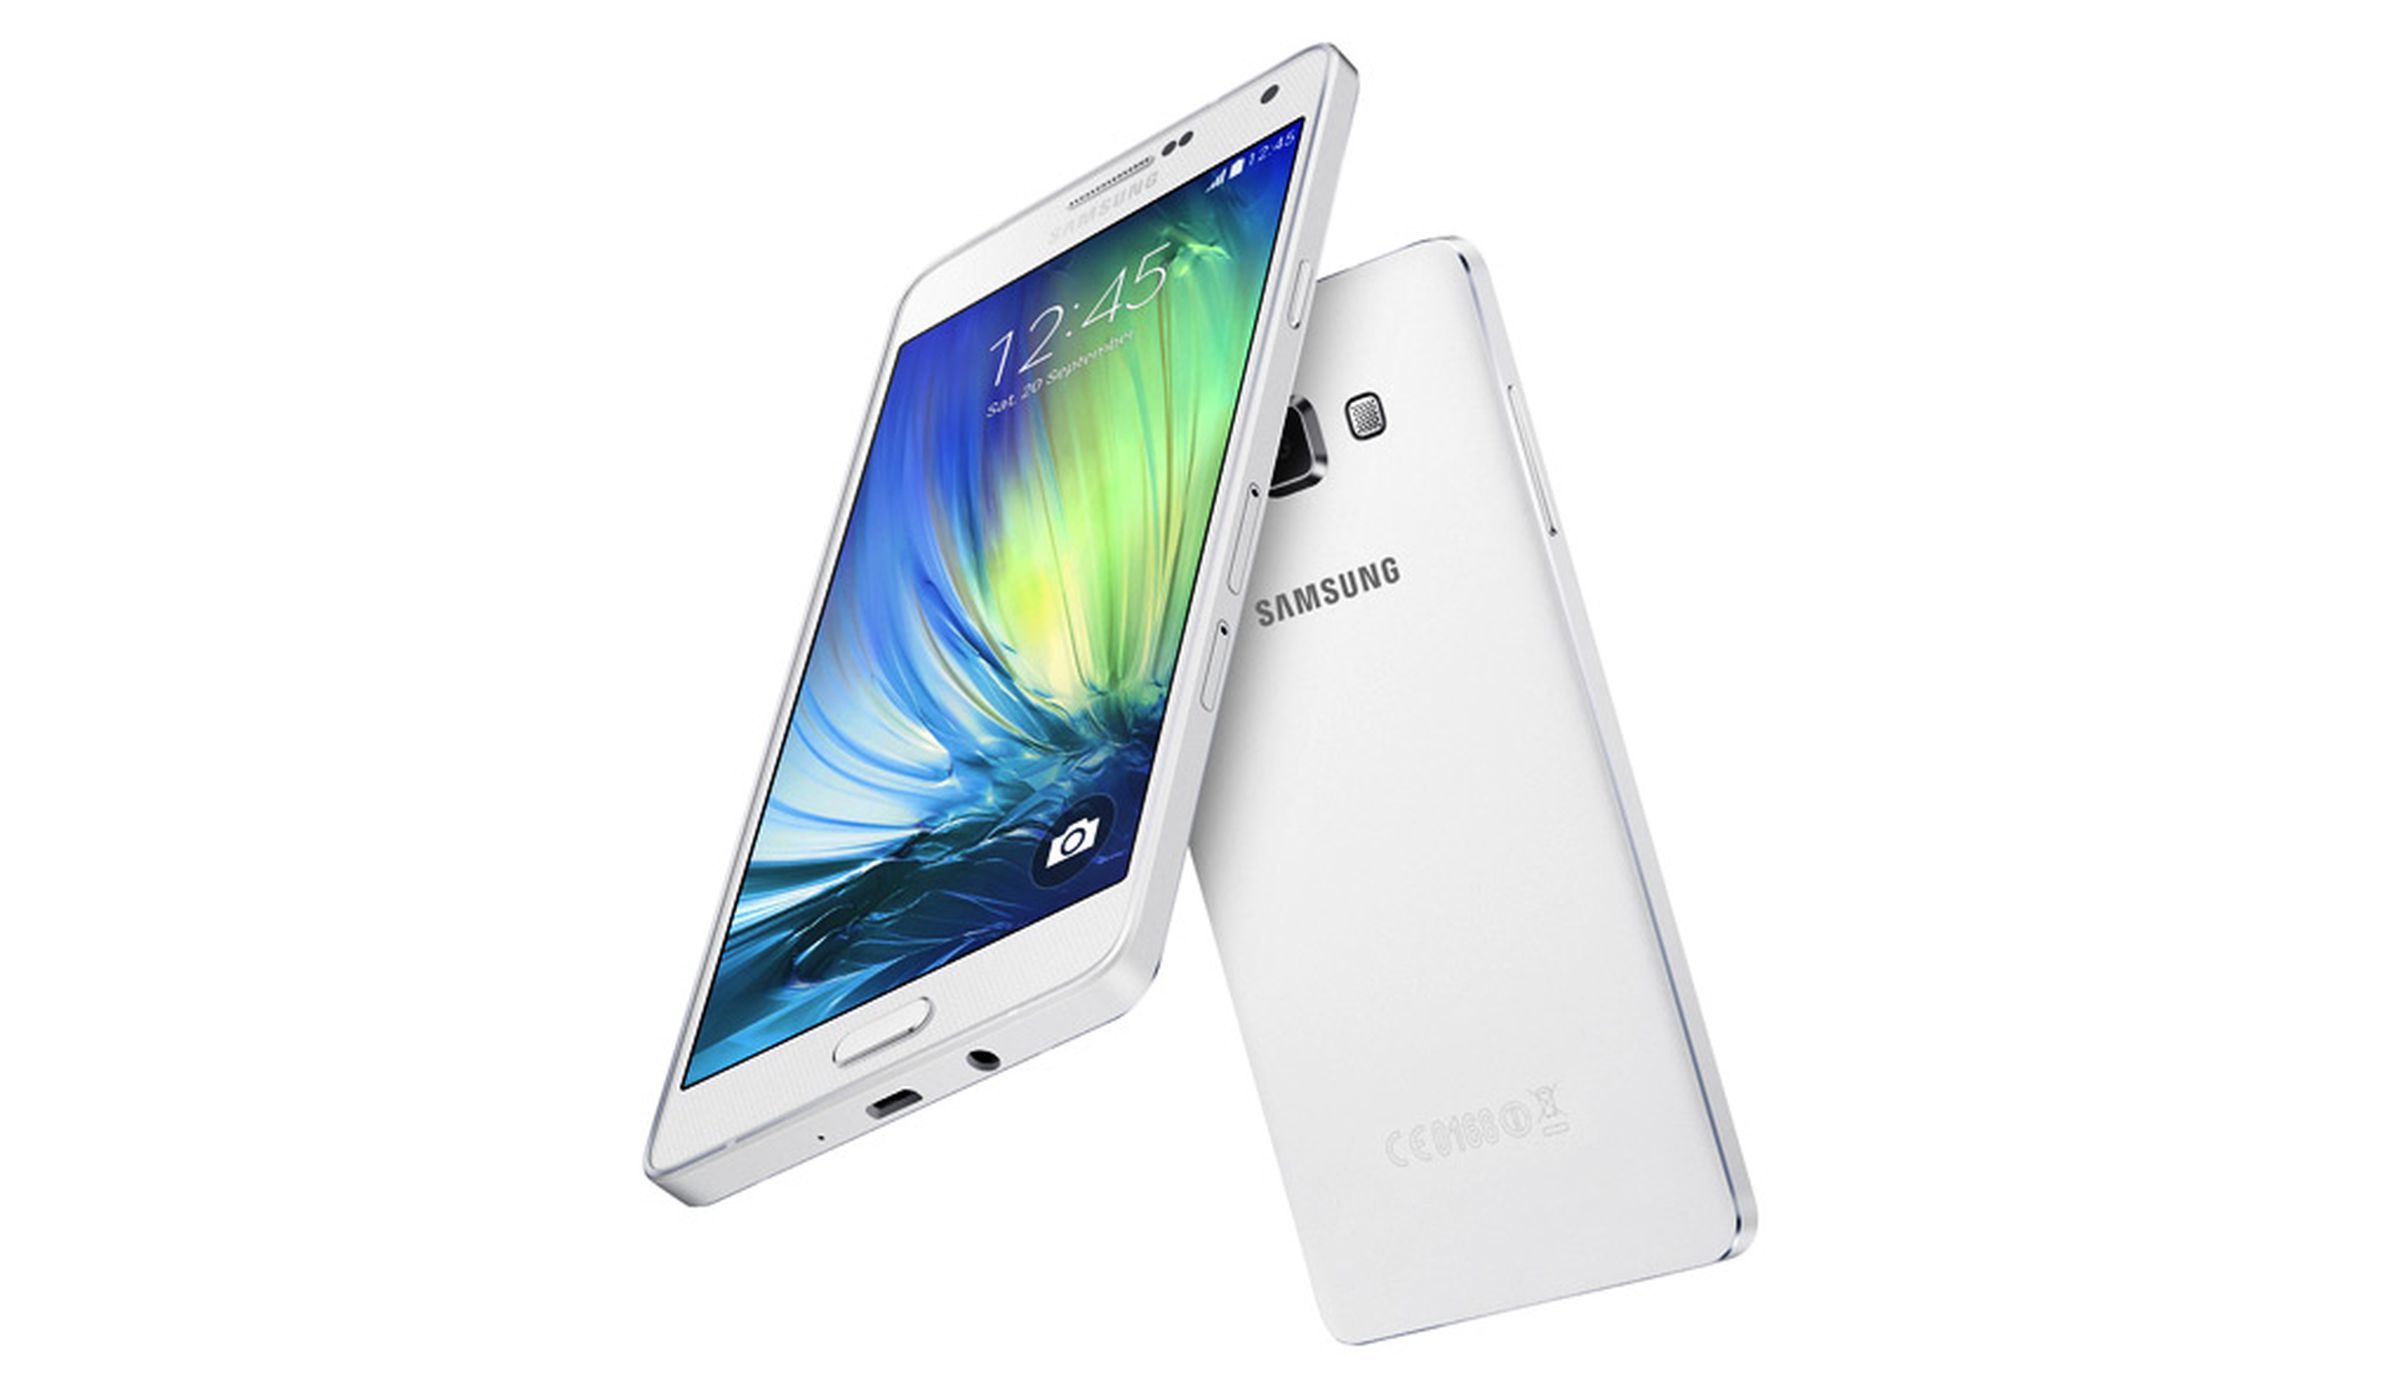 Samsung Galaxy A7 press photos